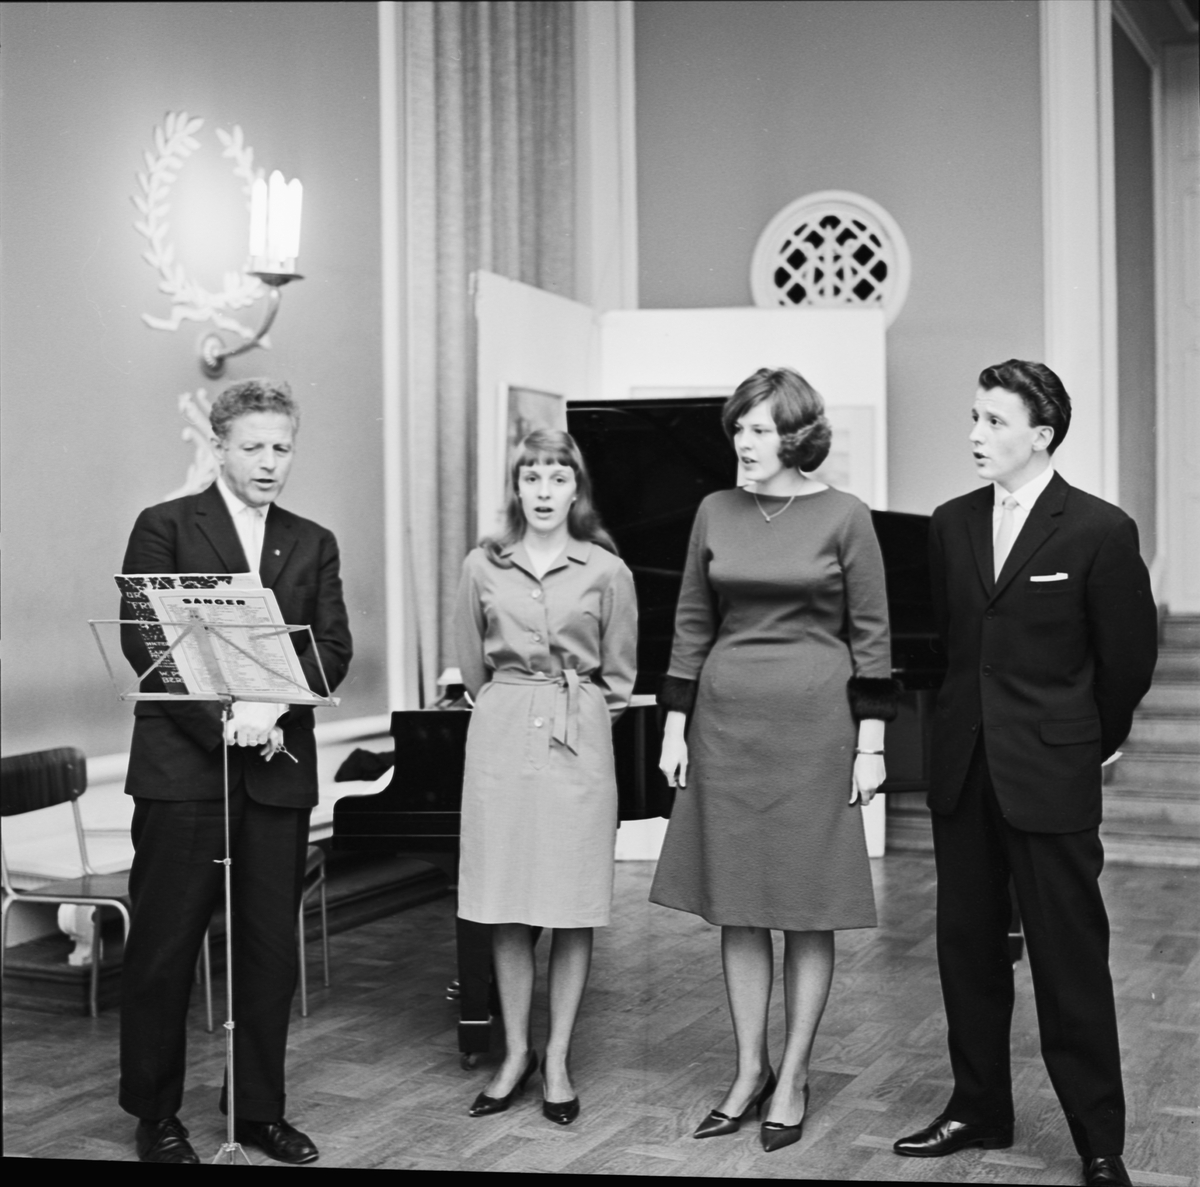 Värmlands nation, värmländsk sångarglädje, Uppsala 1963